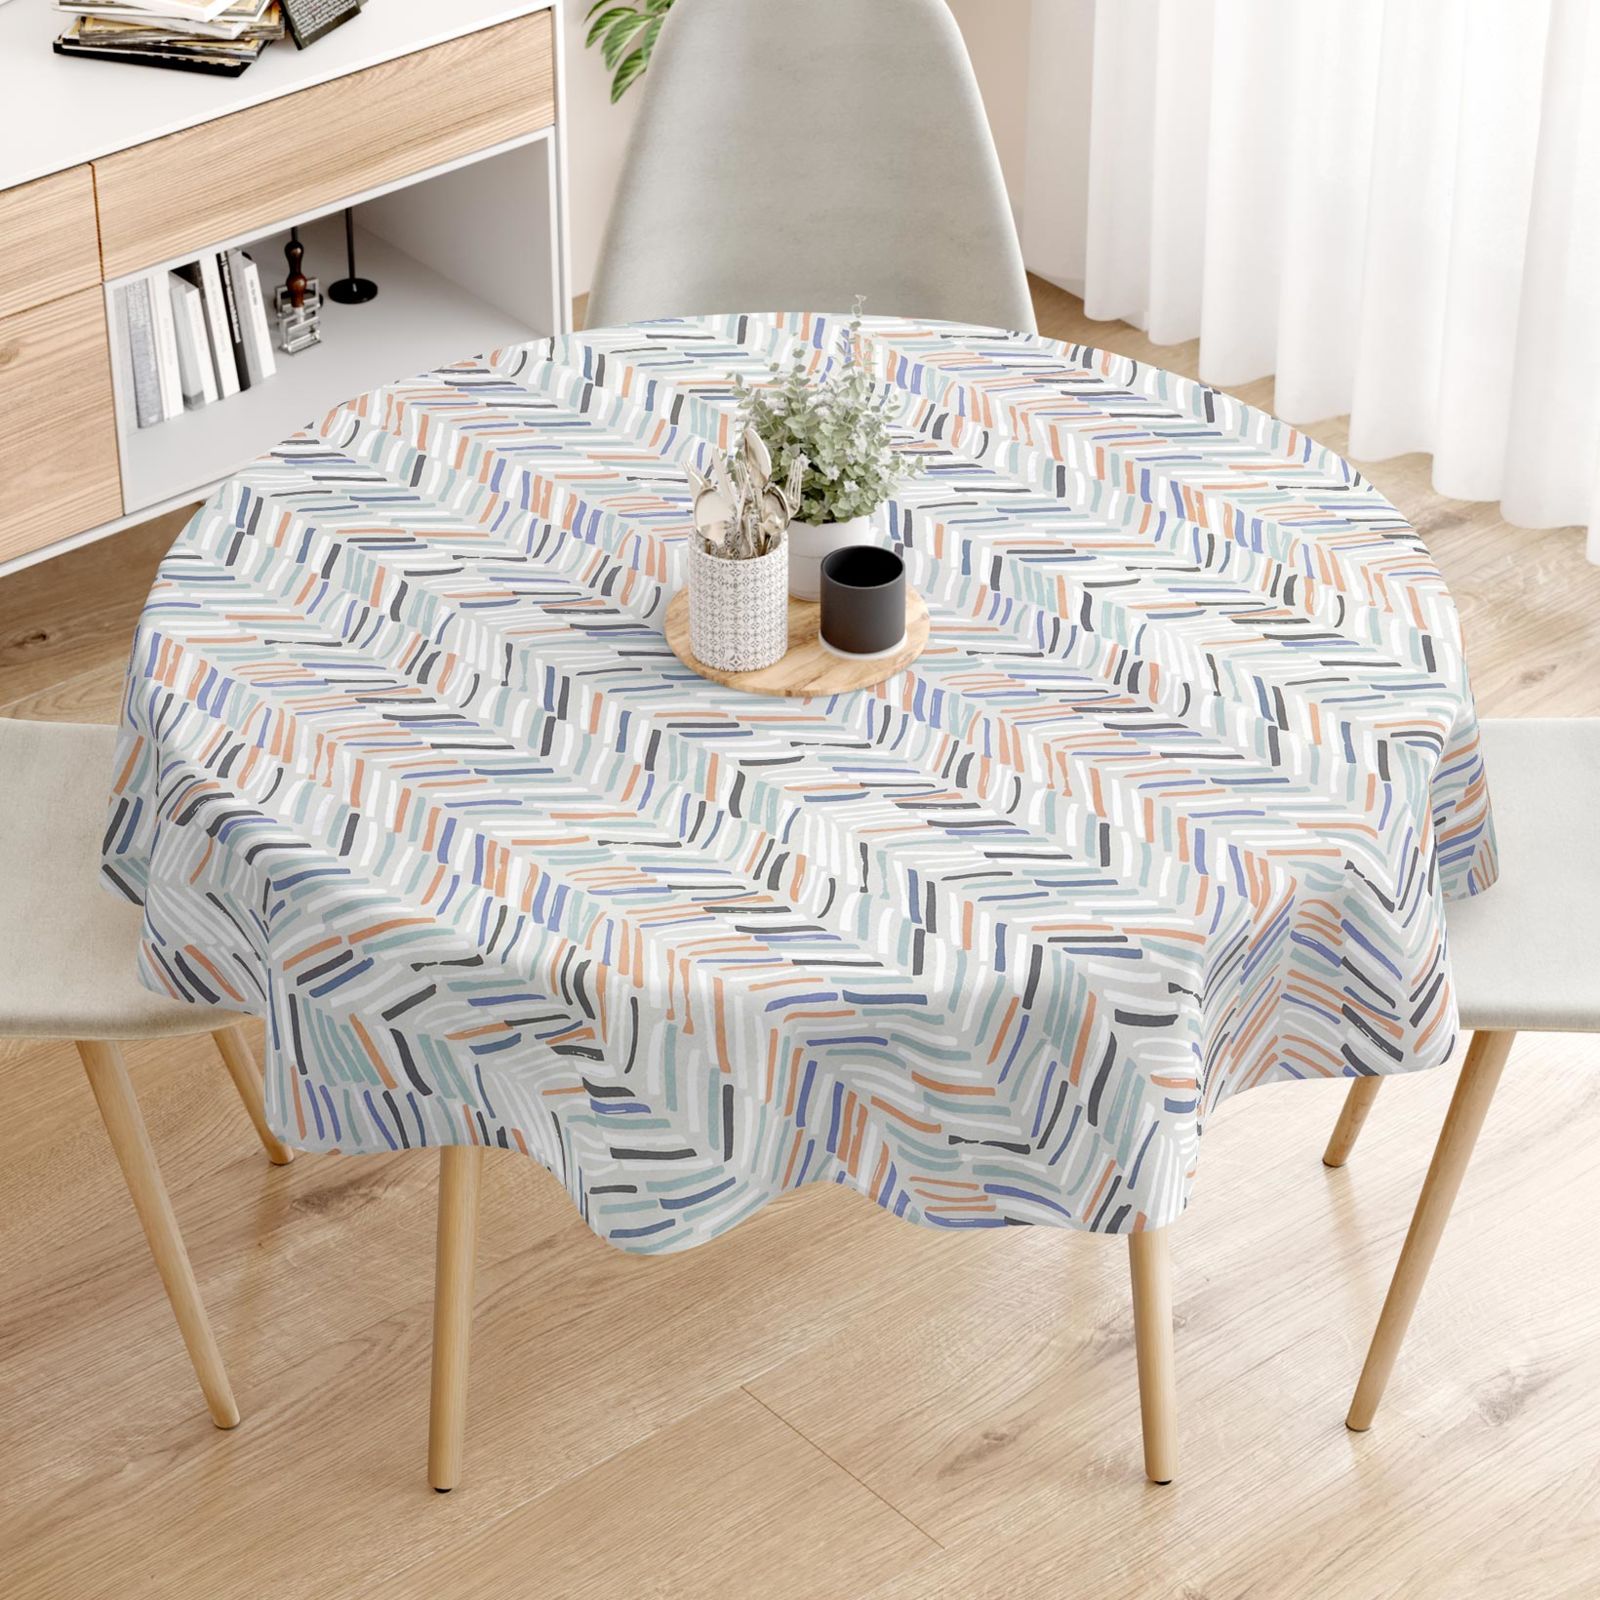 Pamut asztalterítő - festett vonalak - kör alakú